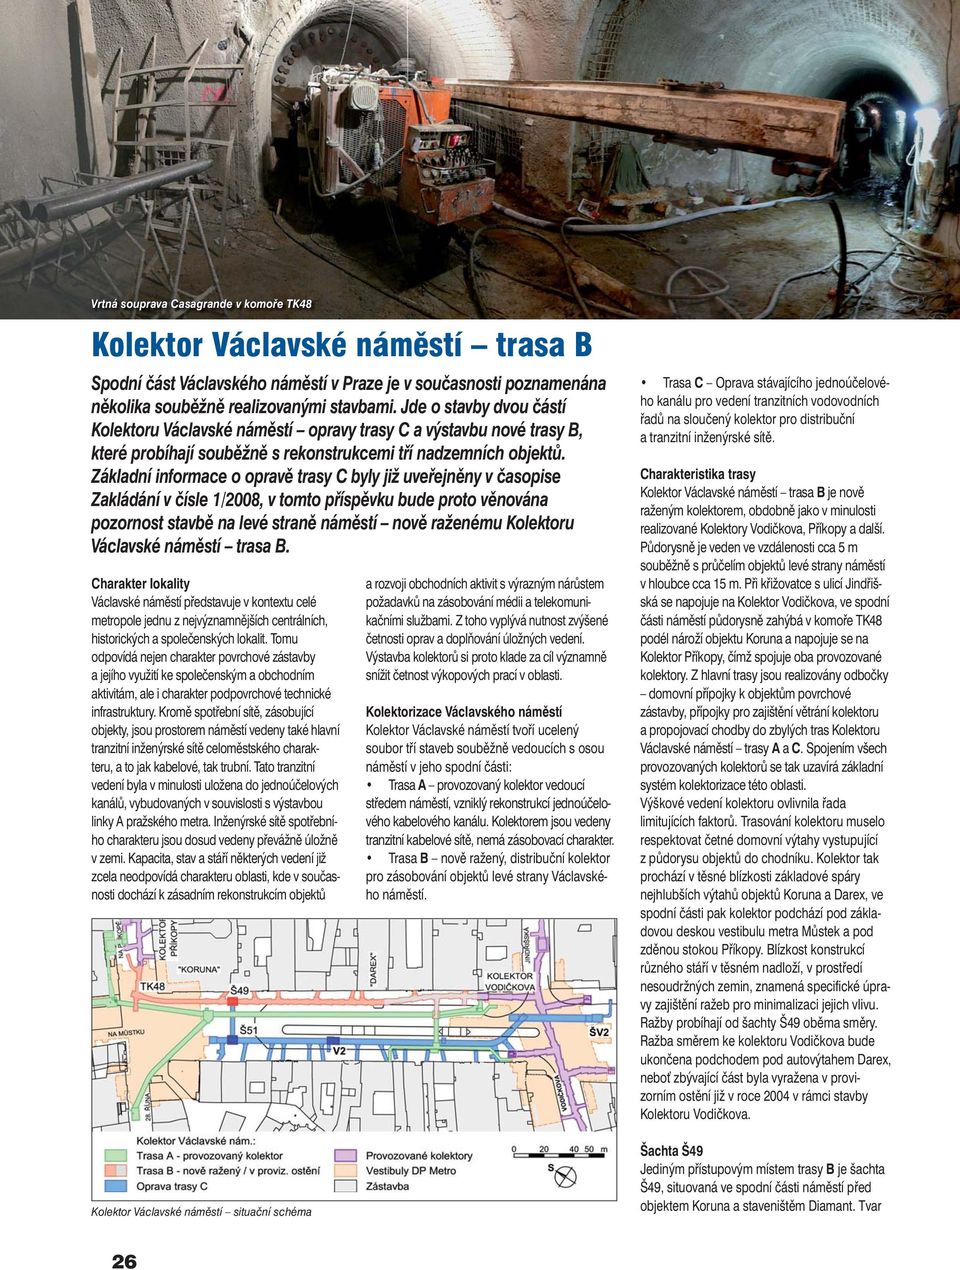 Základní informace o opravě trasy C byly již uveřejněny v časopise Zakládání v čísle 1/2008, v tomto příspěvku bude proto věnována pozornost stavbě na levé straně náměstí nově raženému Kolektoru